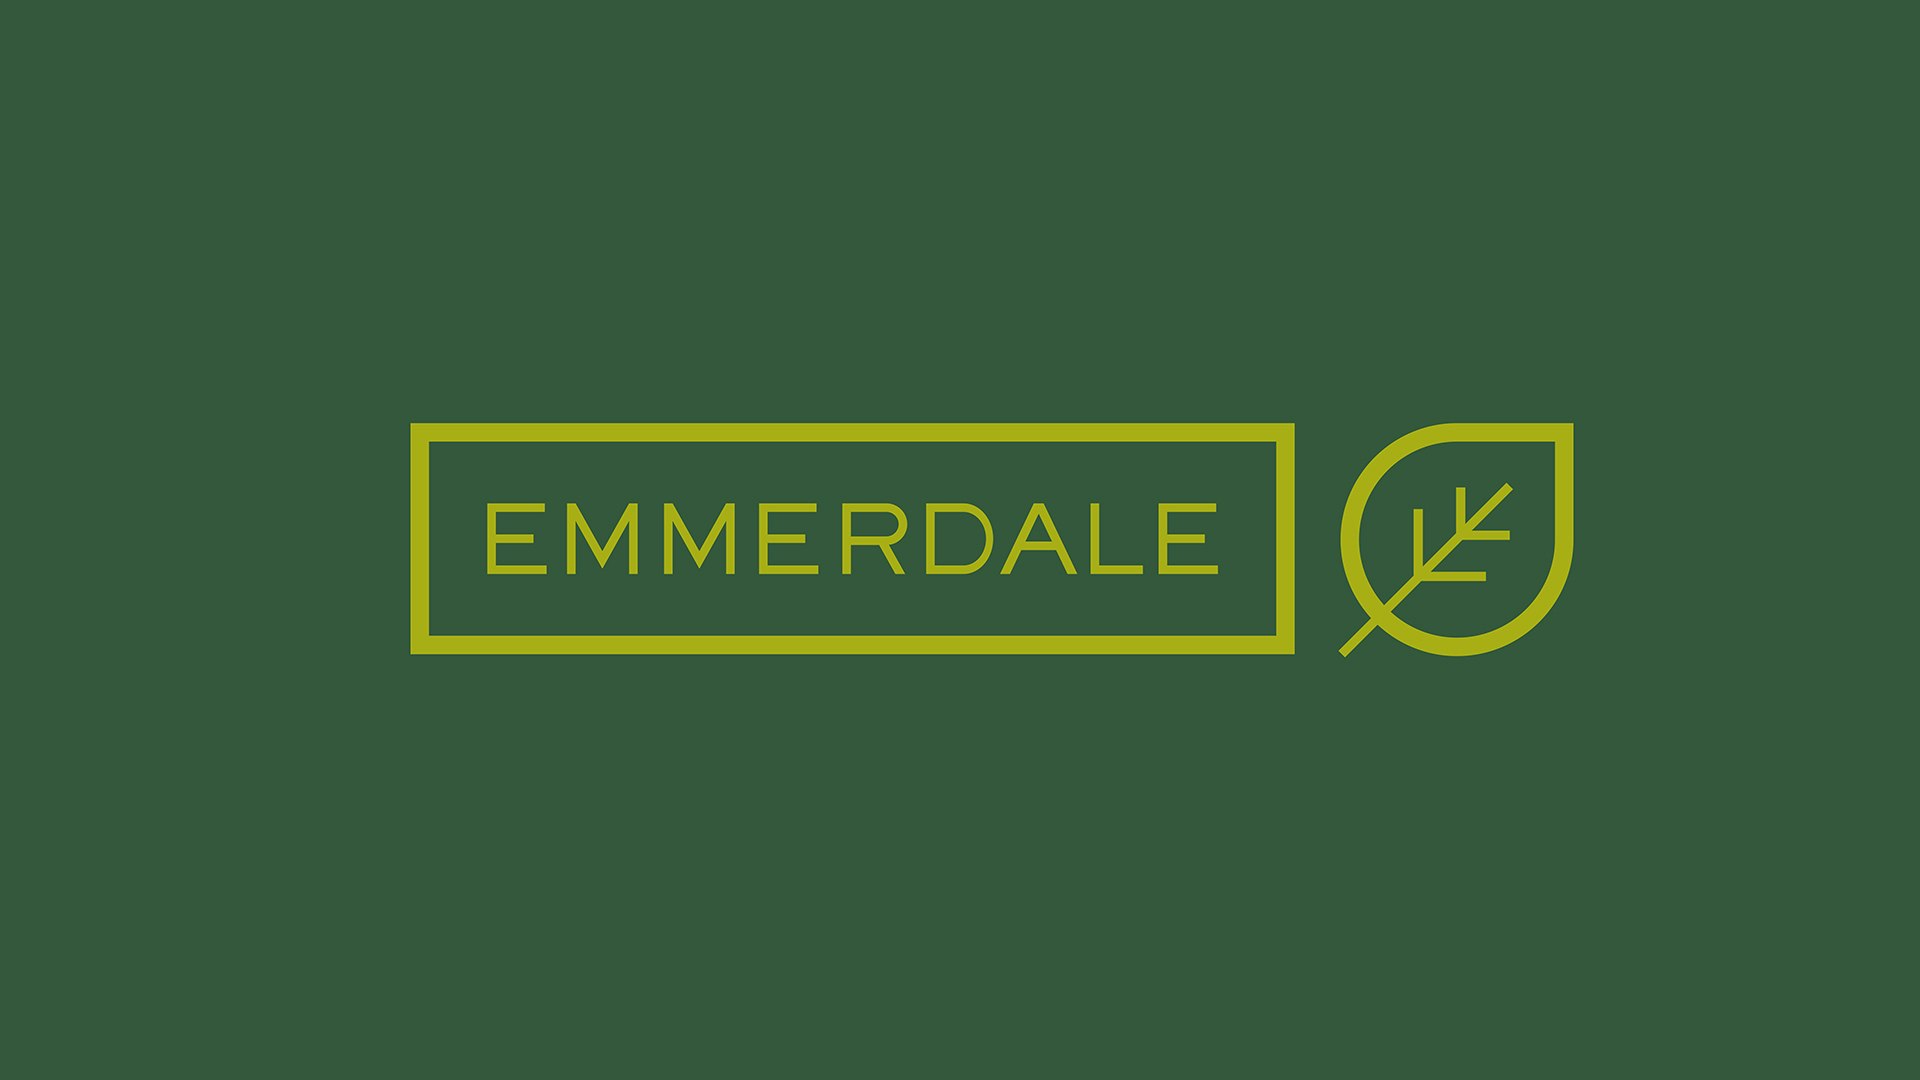 Jason Ford - Emmerdale Sustainability identity